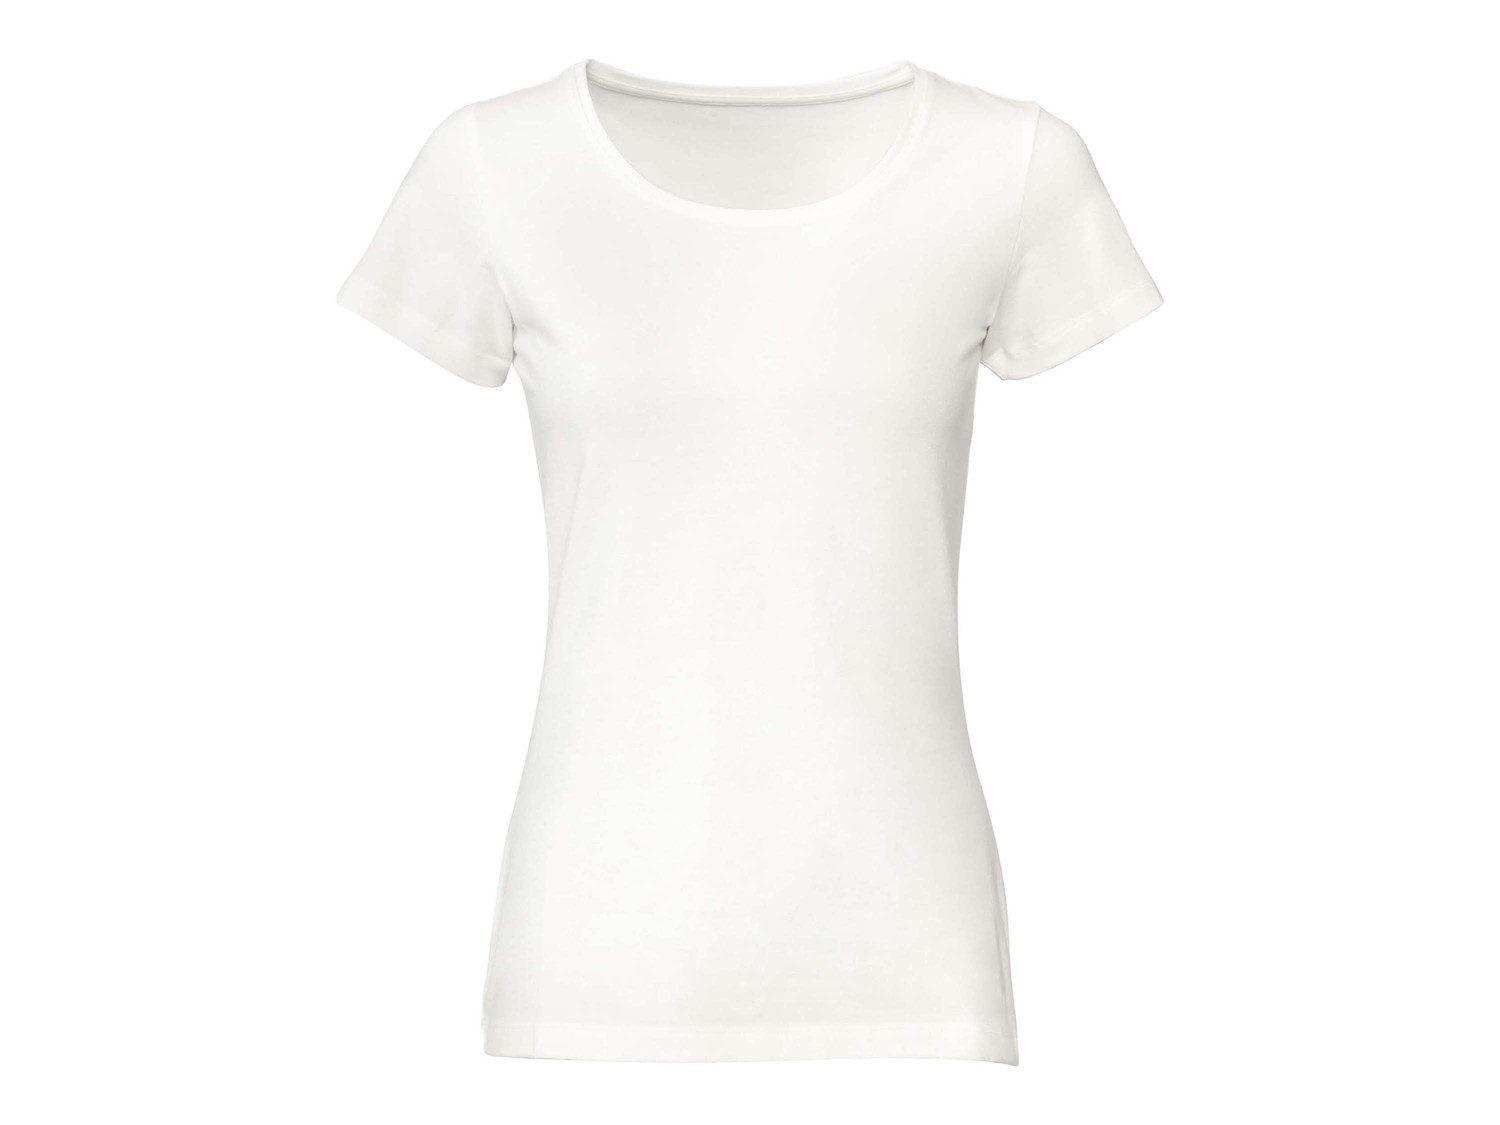 T-shirt da donna, 2 pezzi Esmara, prezzo 8.99 &#8364;  
Misure: S-L
- GOTS